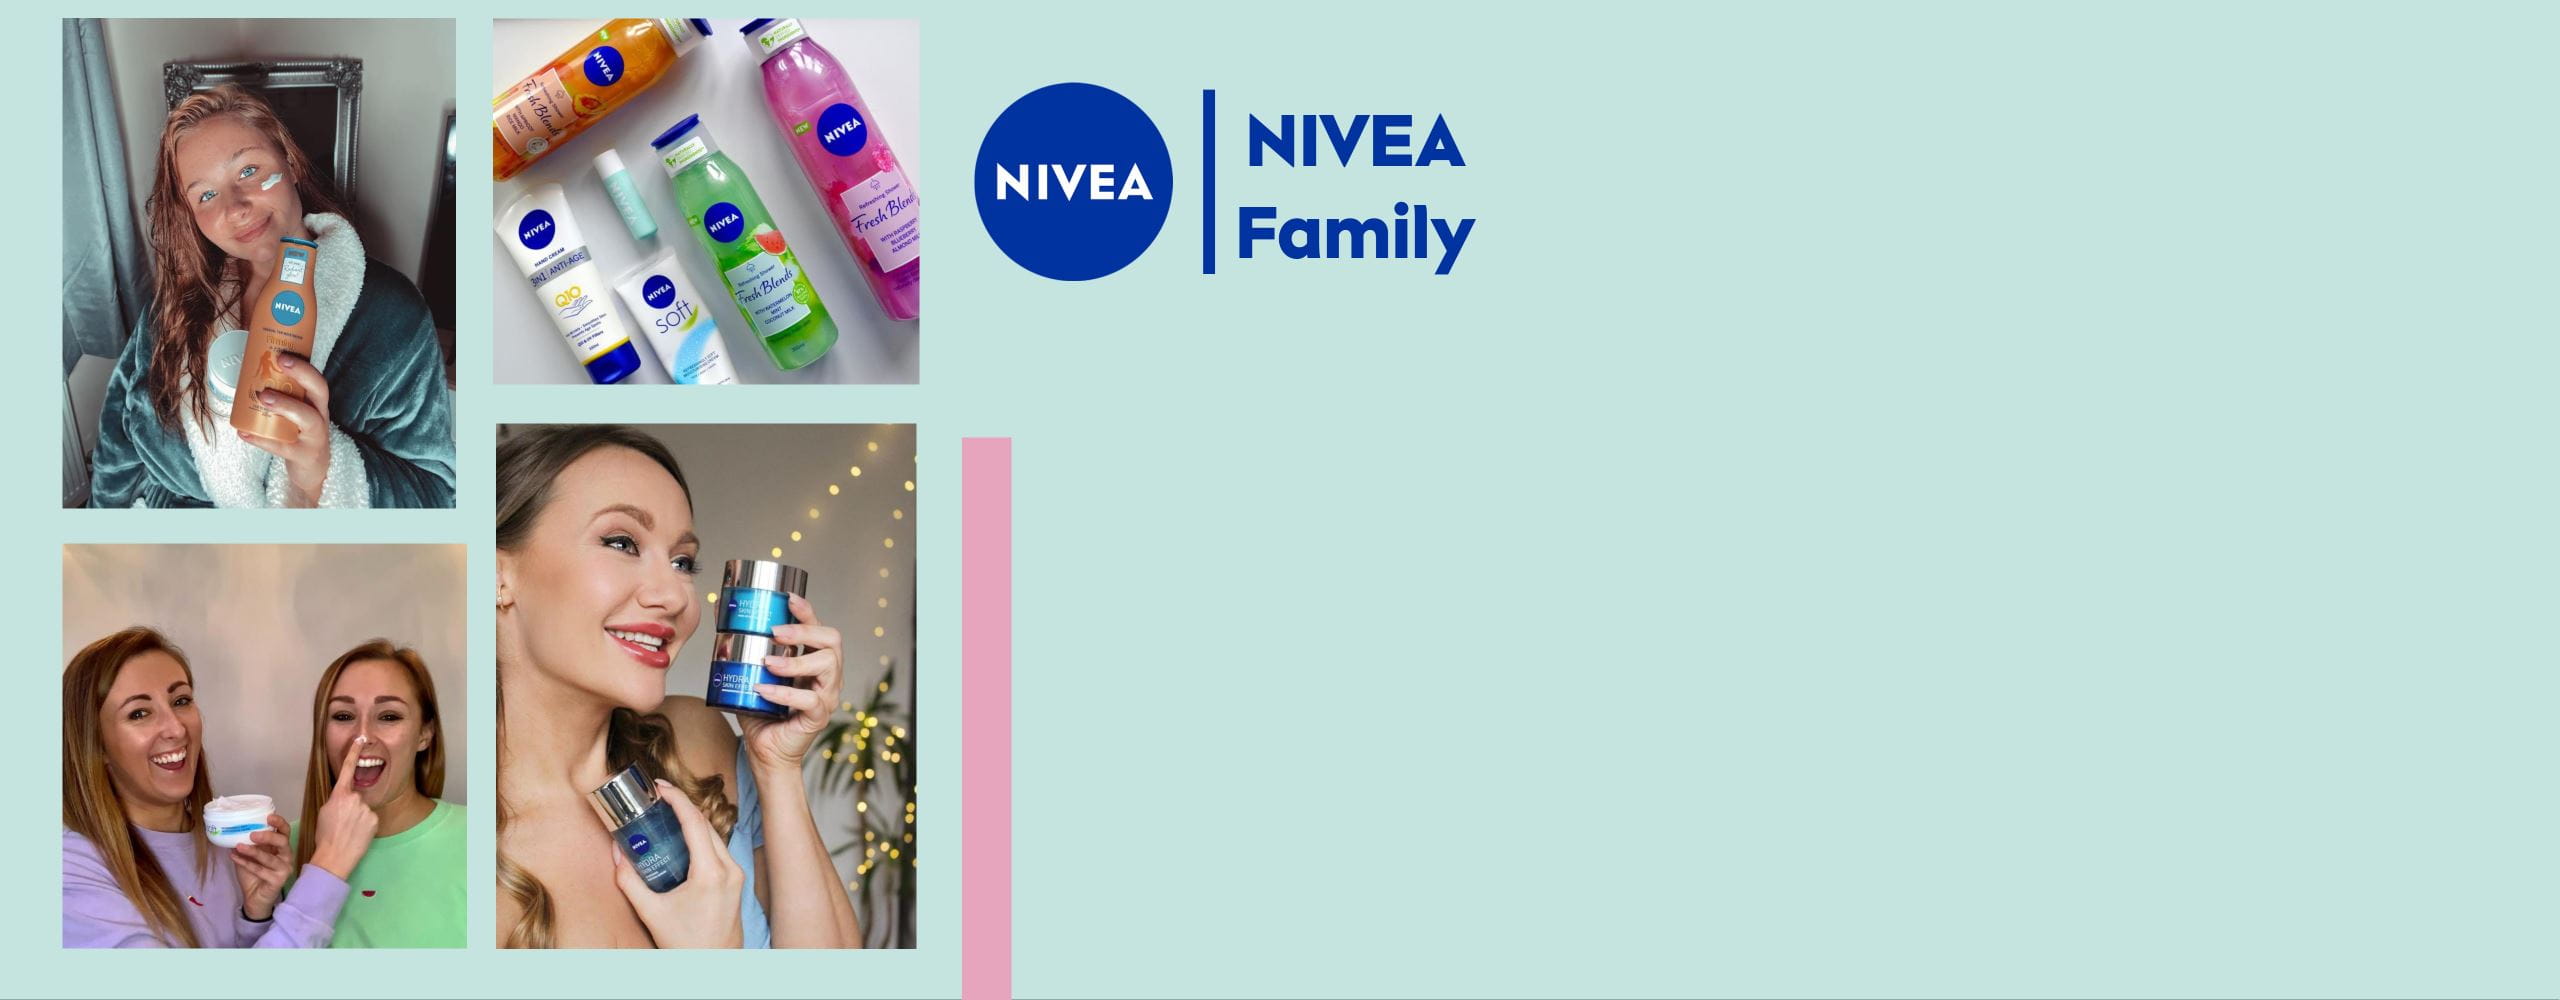 NIVEA Family